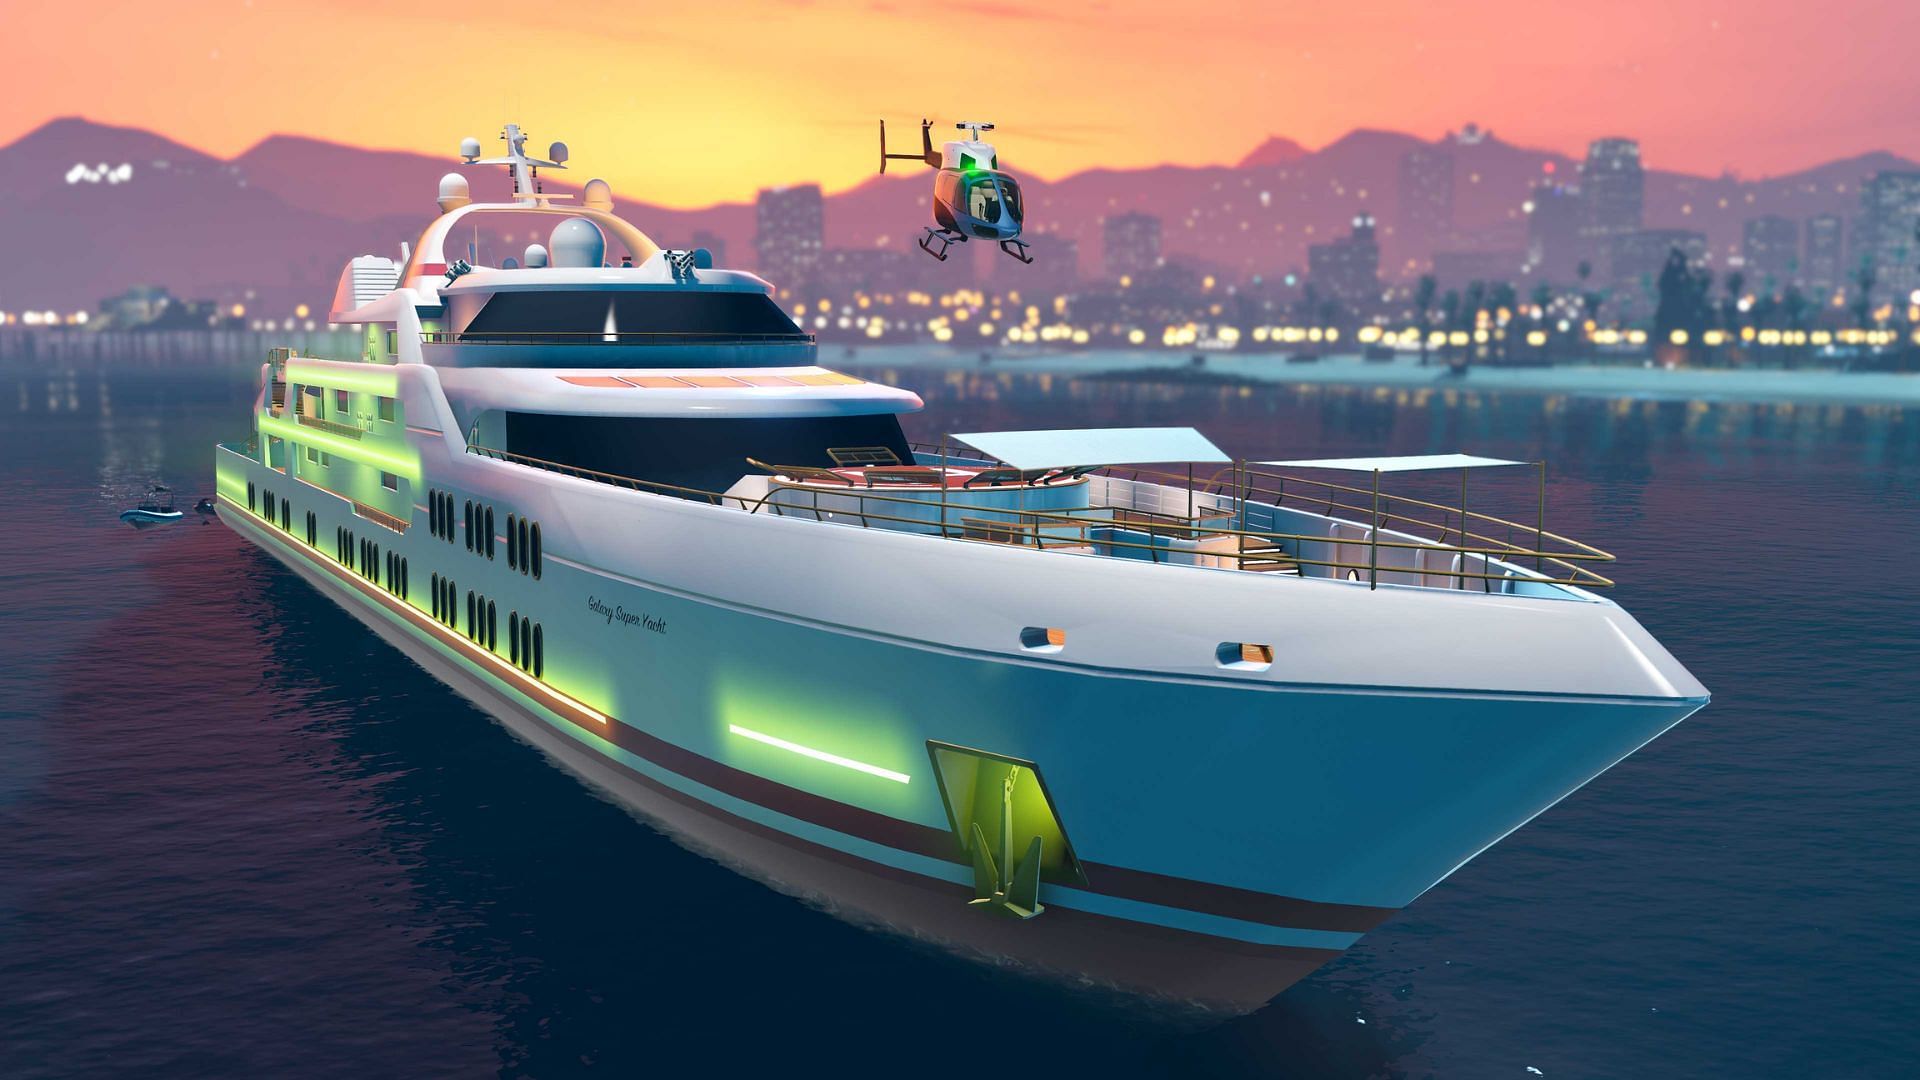 gta 5 online yacht kaufen